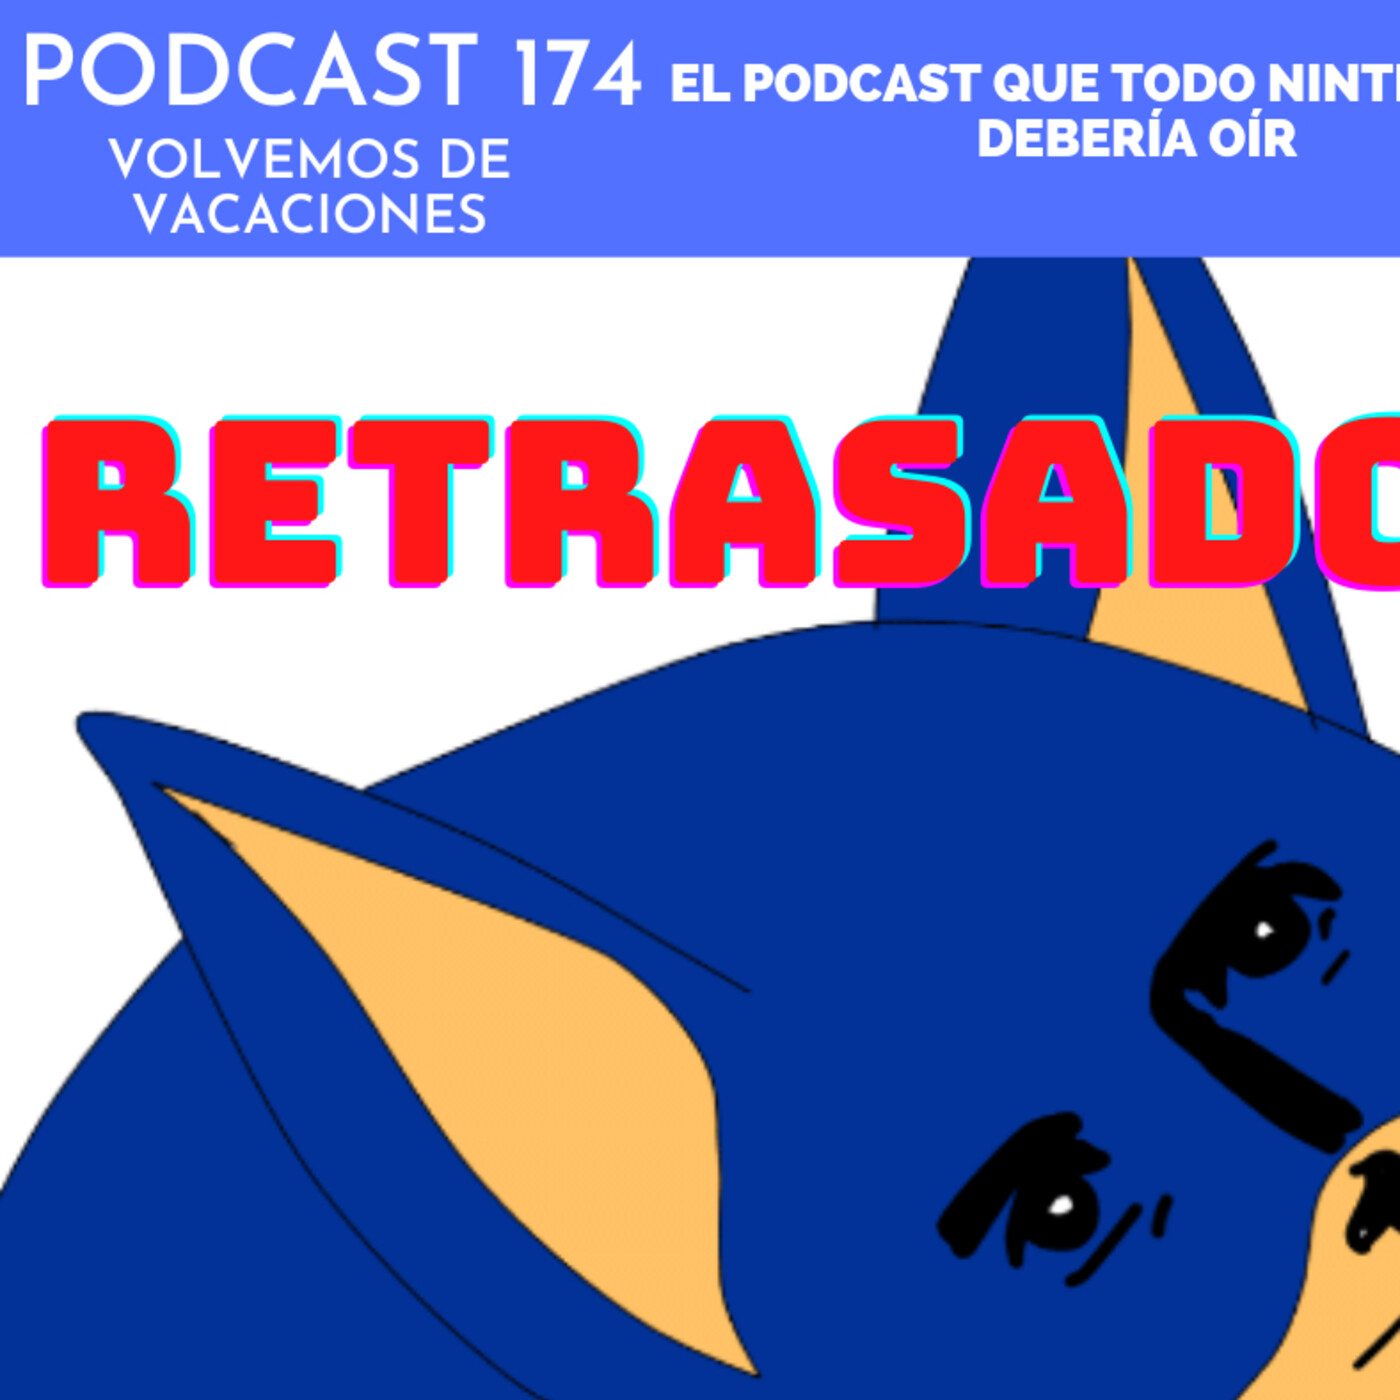 Podcast 174 - Volvemos de vacaciones